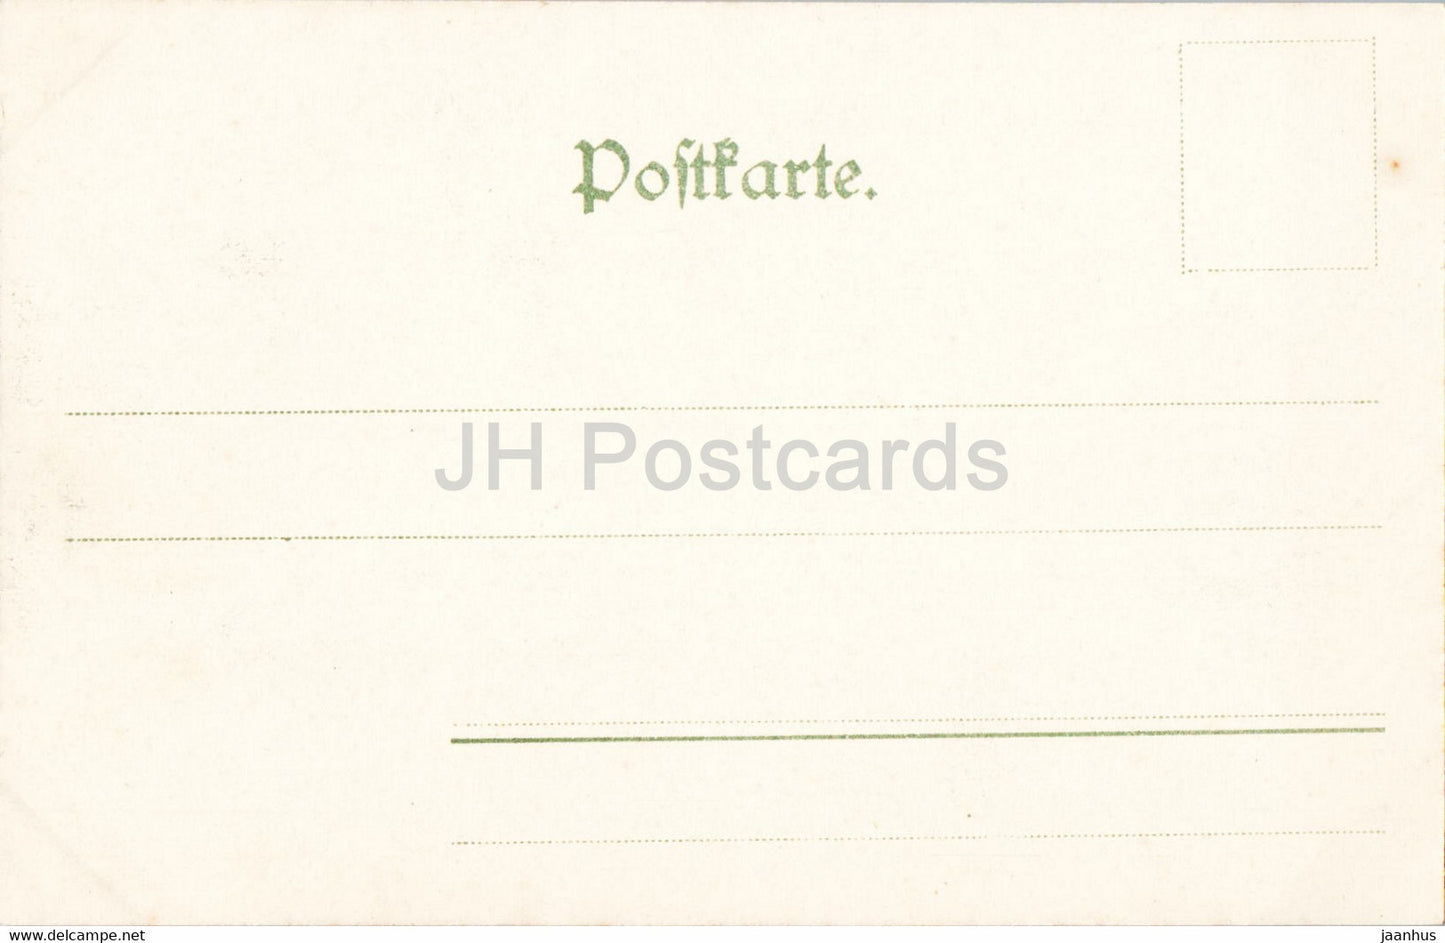 Die Gansfelsen - Bastei - Sachs Schweiz - 198 - carte postale ancienne - Allemagne - inutilisée